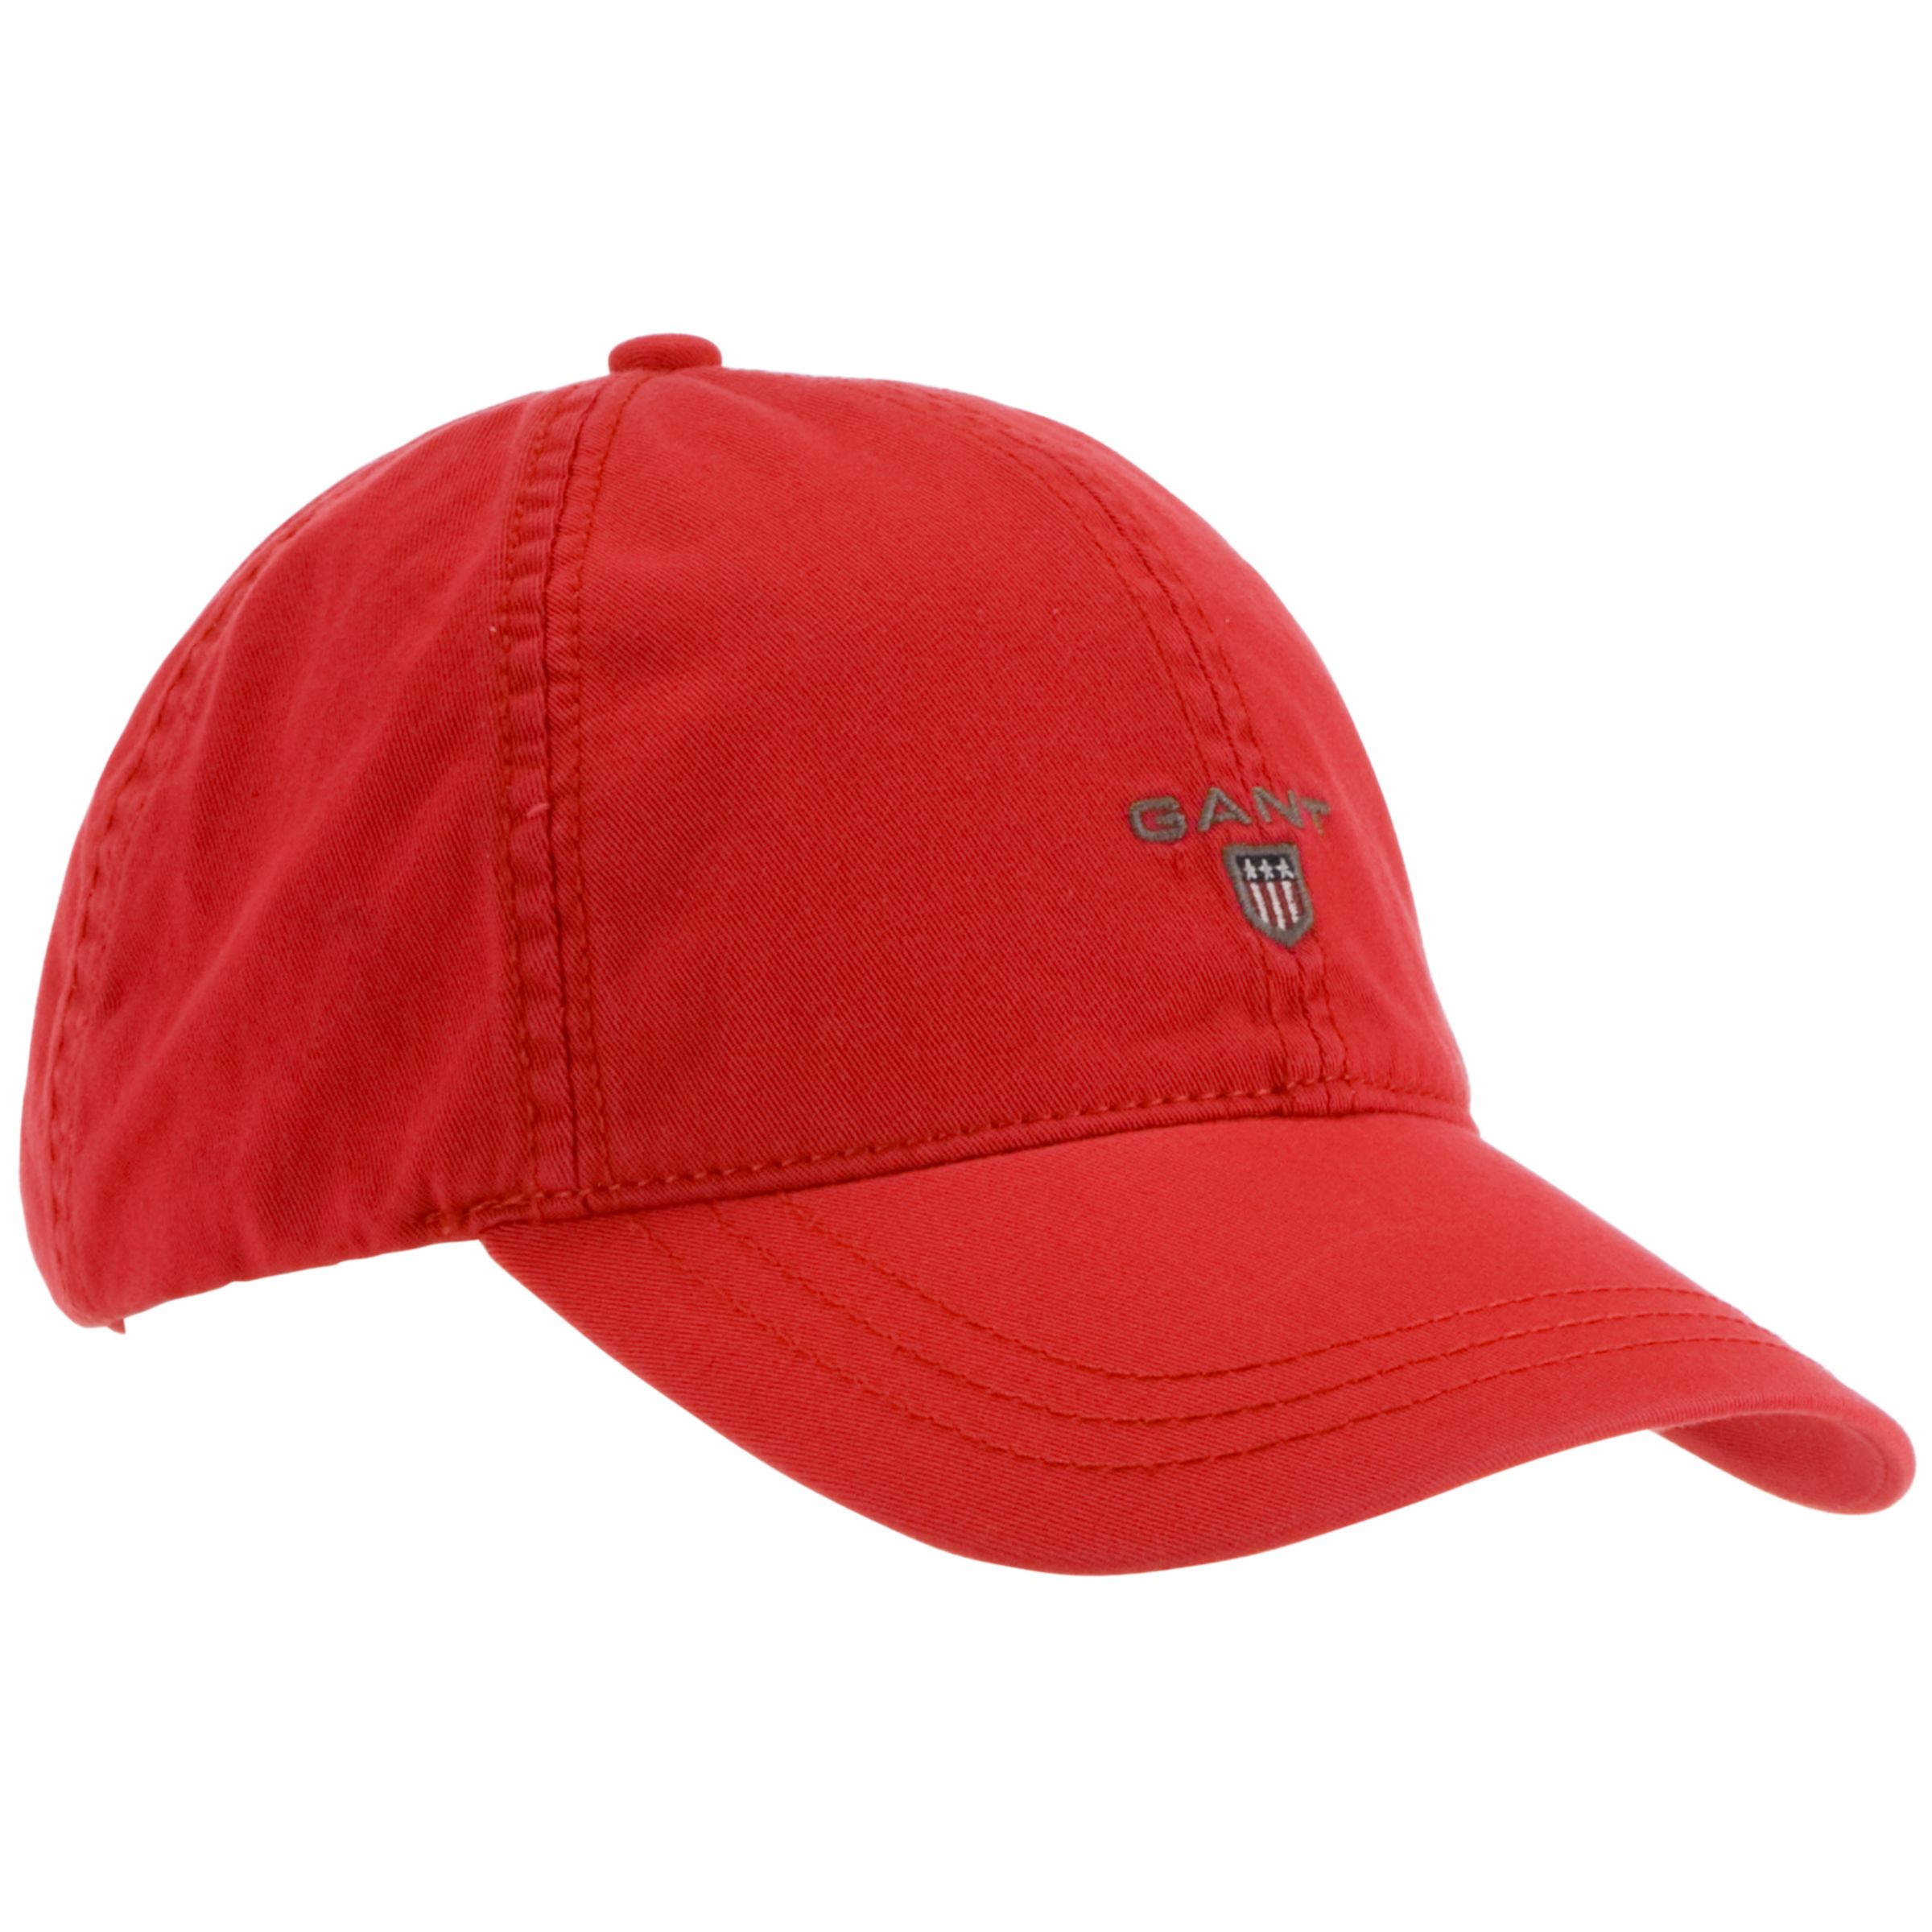 Gant Baseball Cap, Red